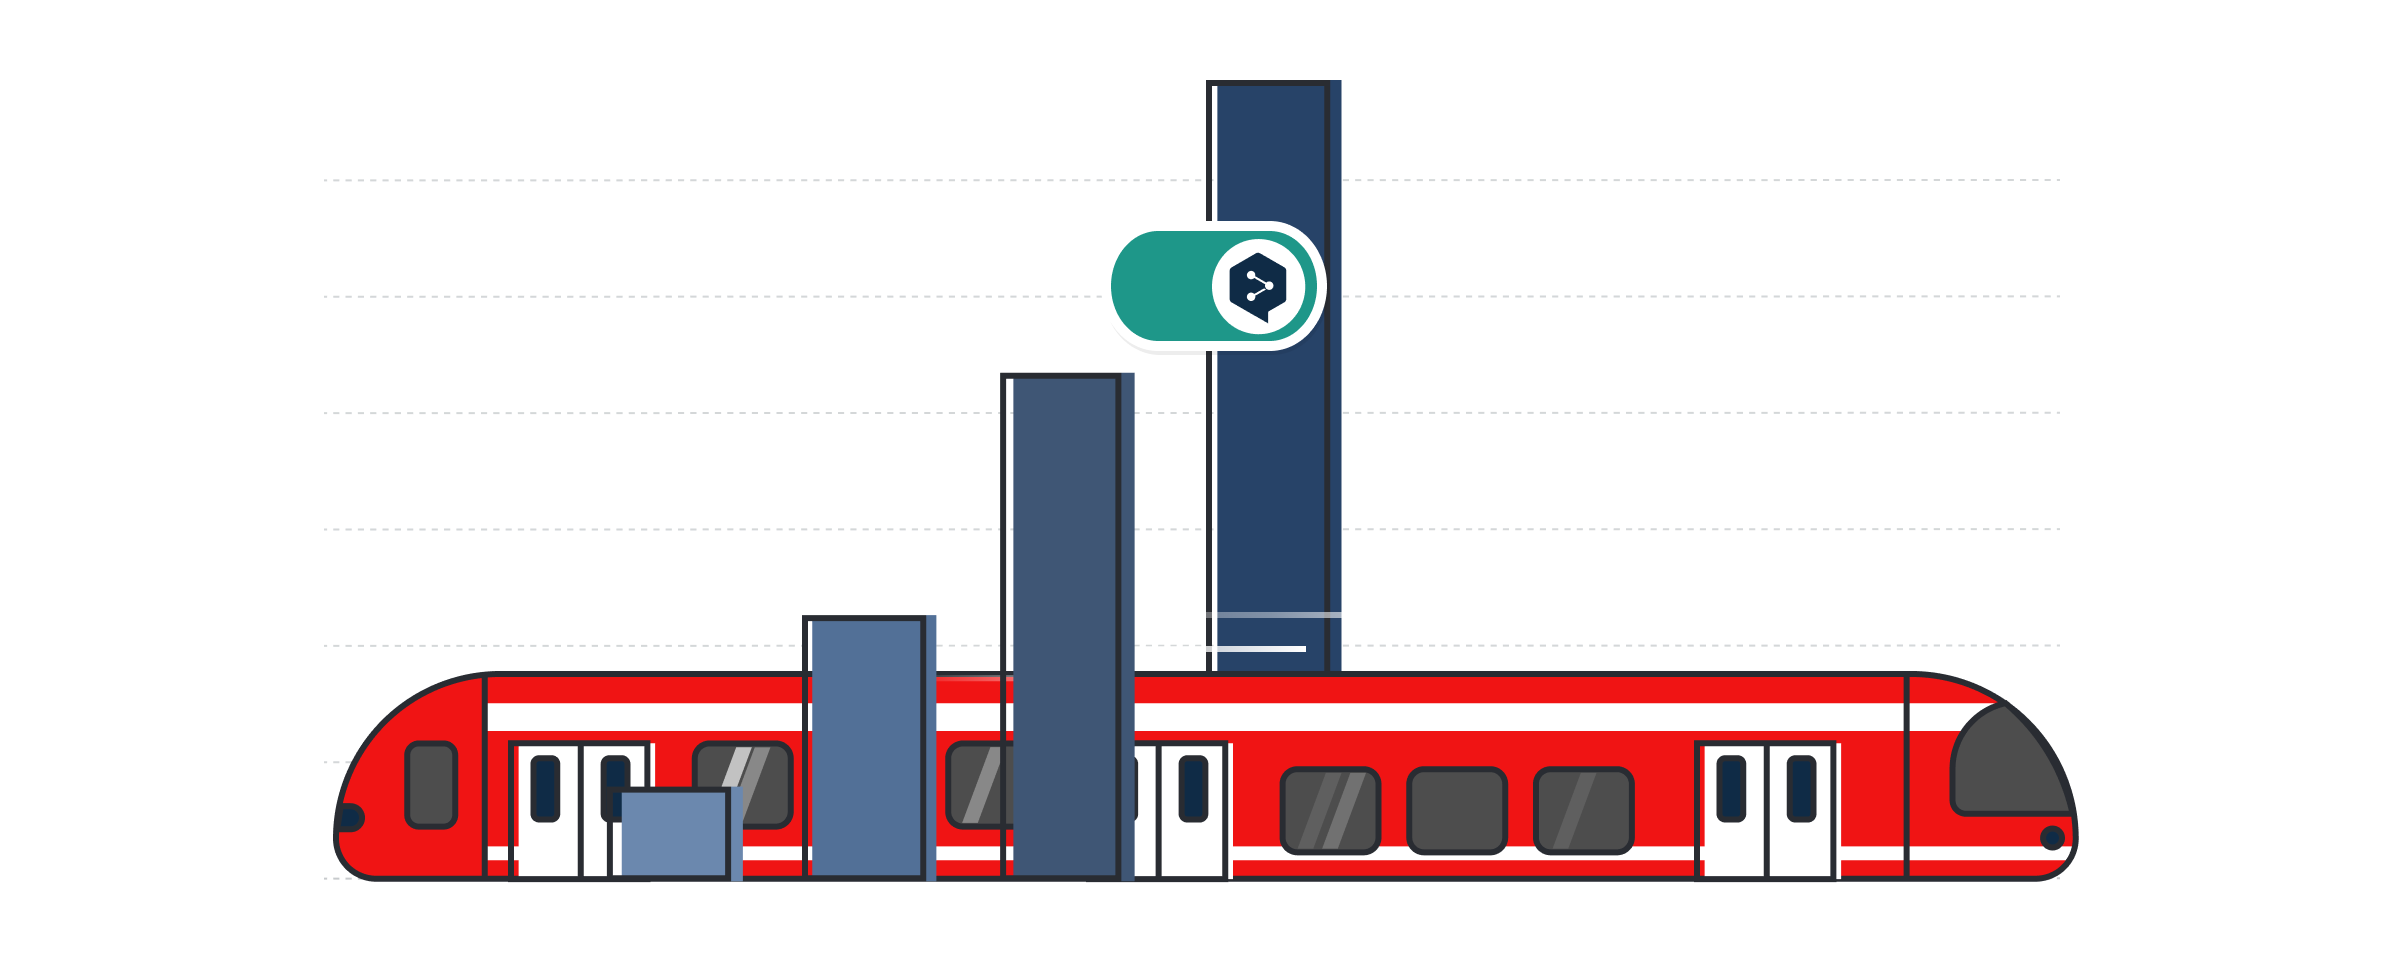 图为一柱形图上的一列红色德铁列车和 DeepL 图标